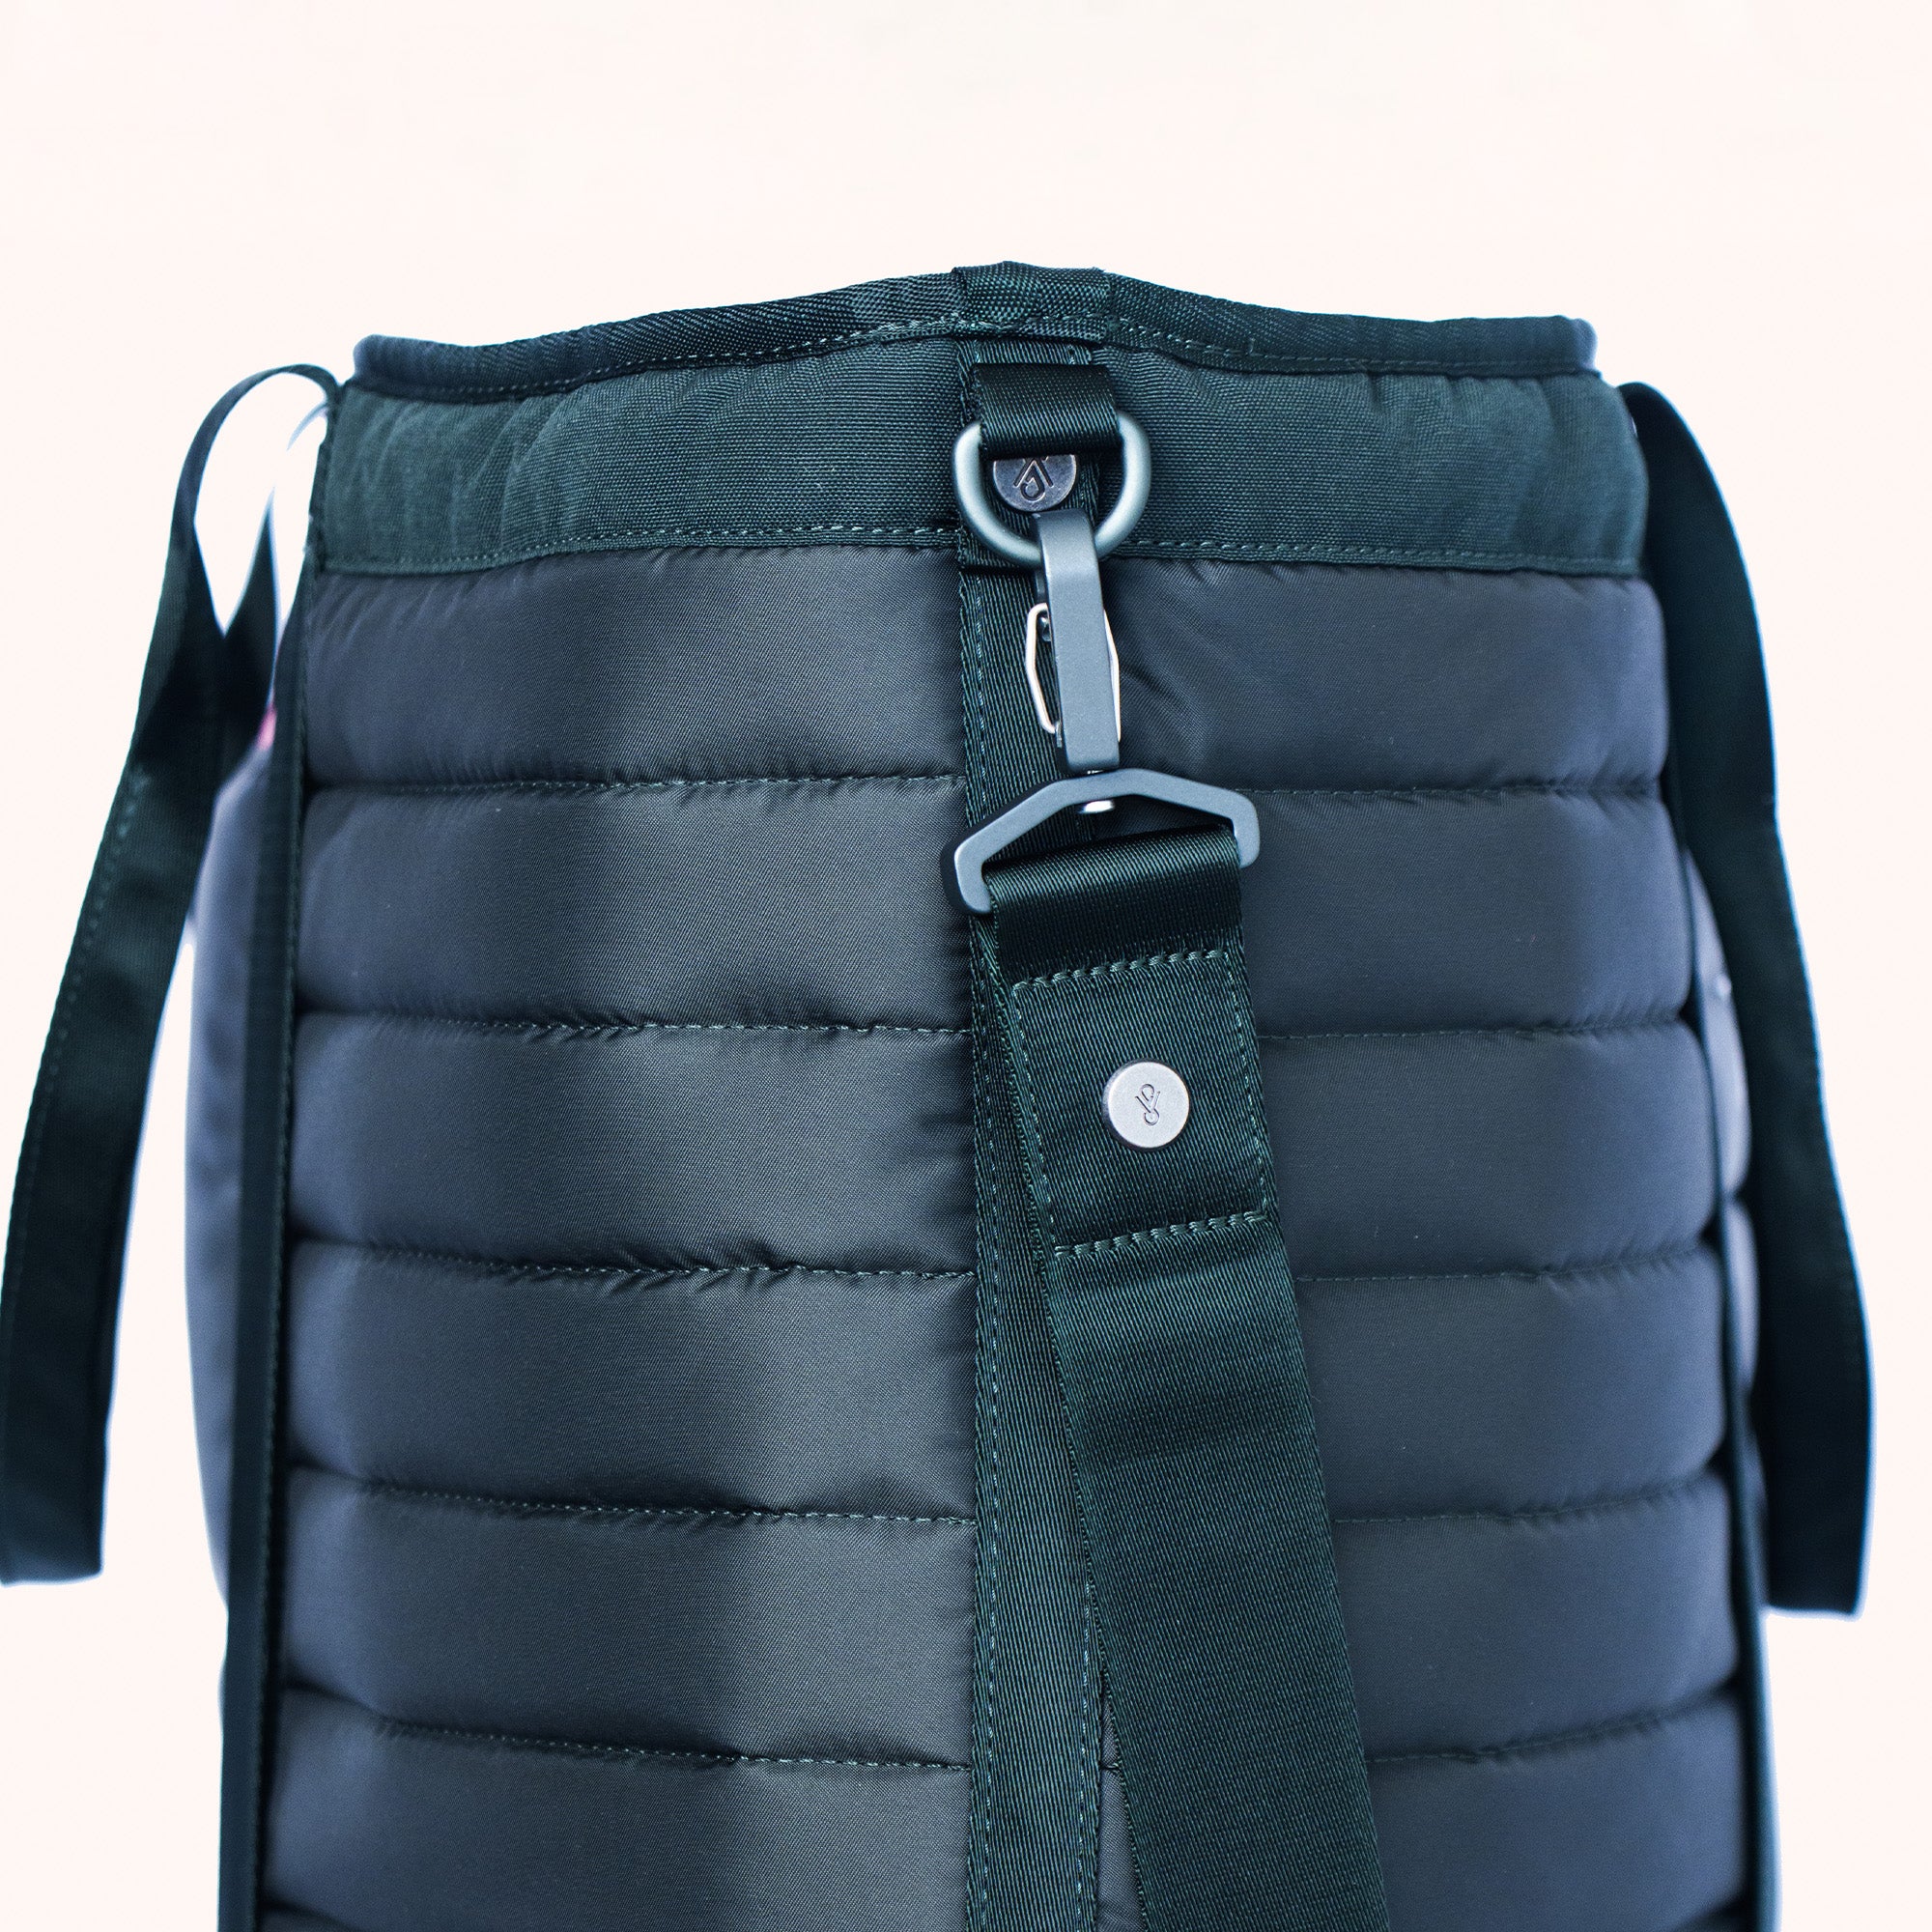 shoulder strap and metal rivet detail on tote bag